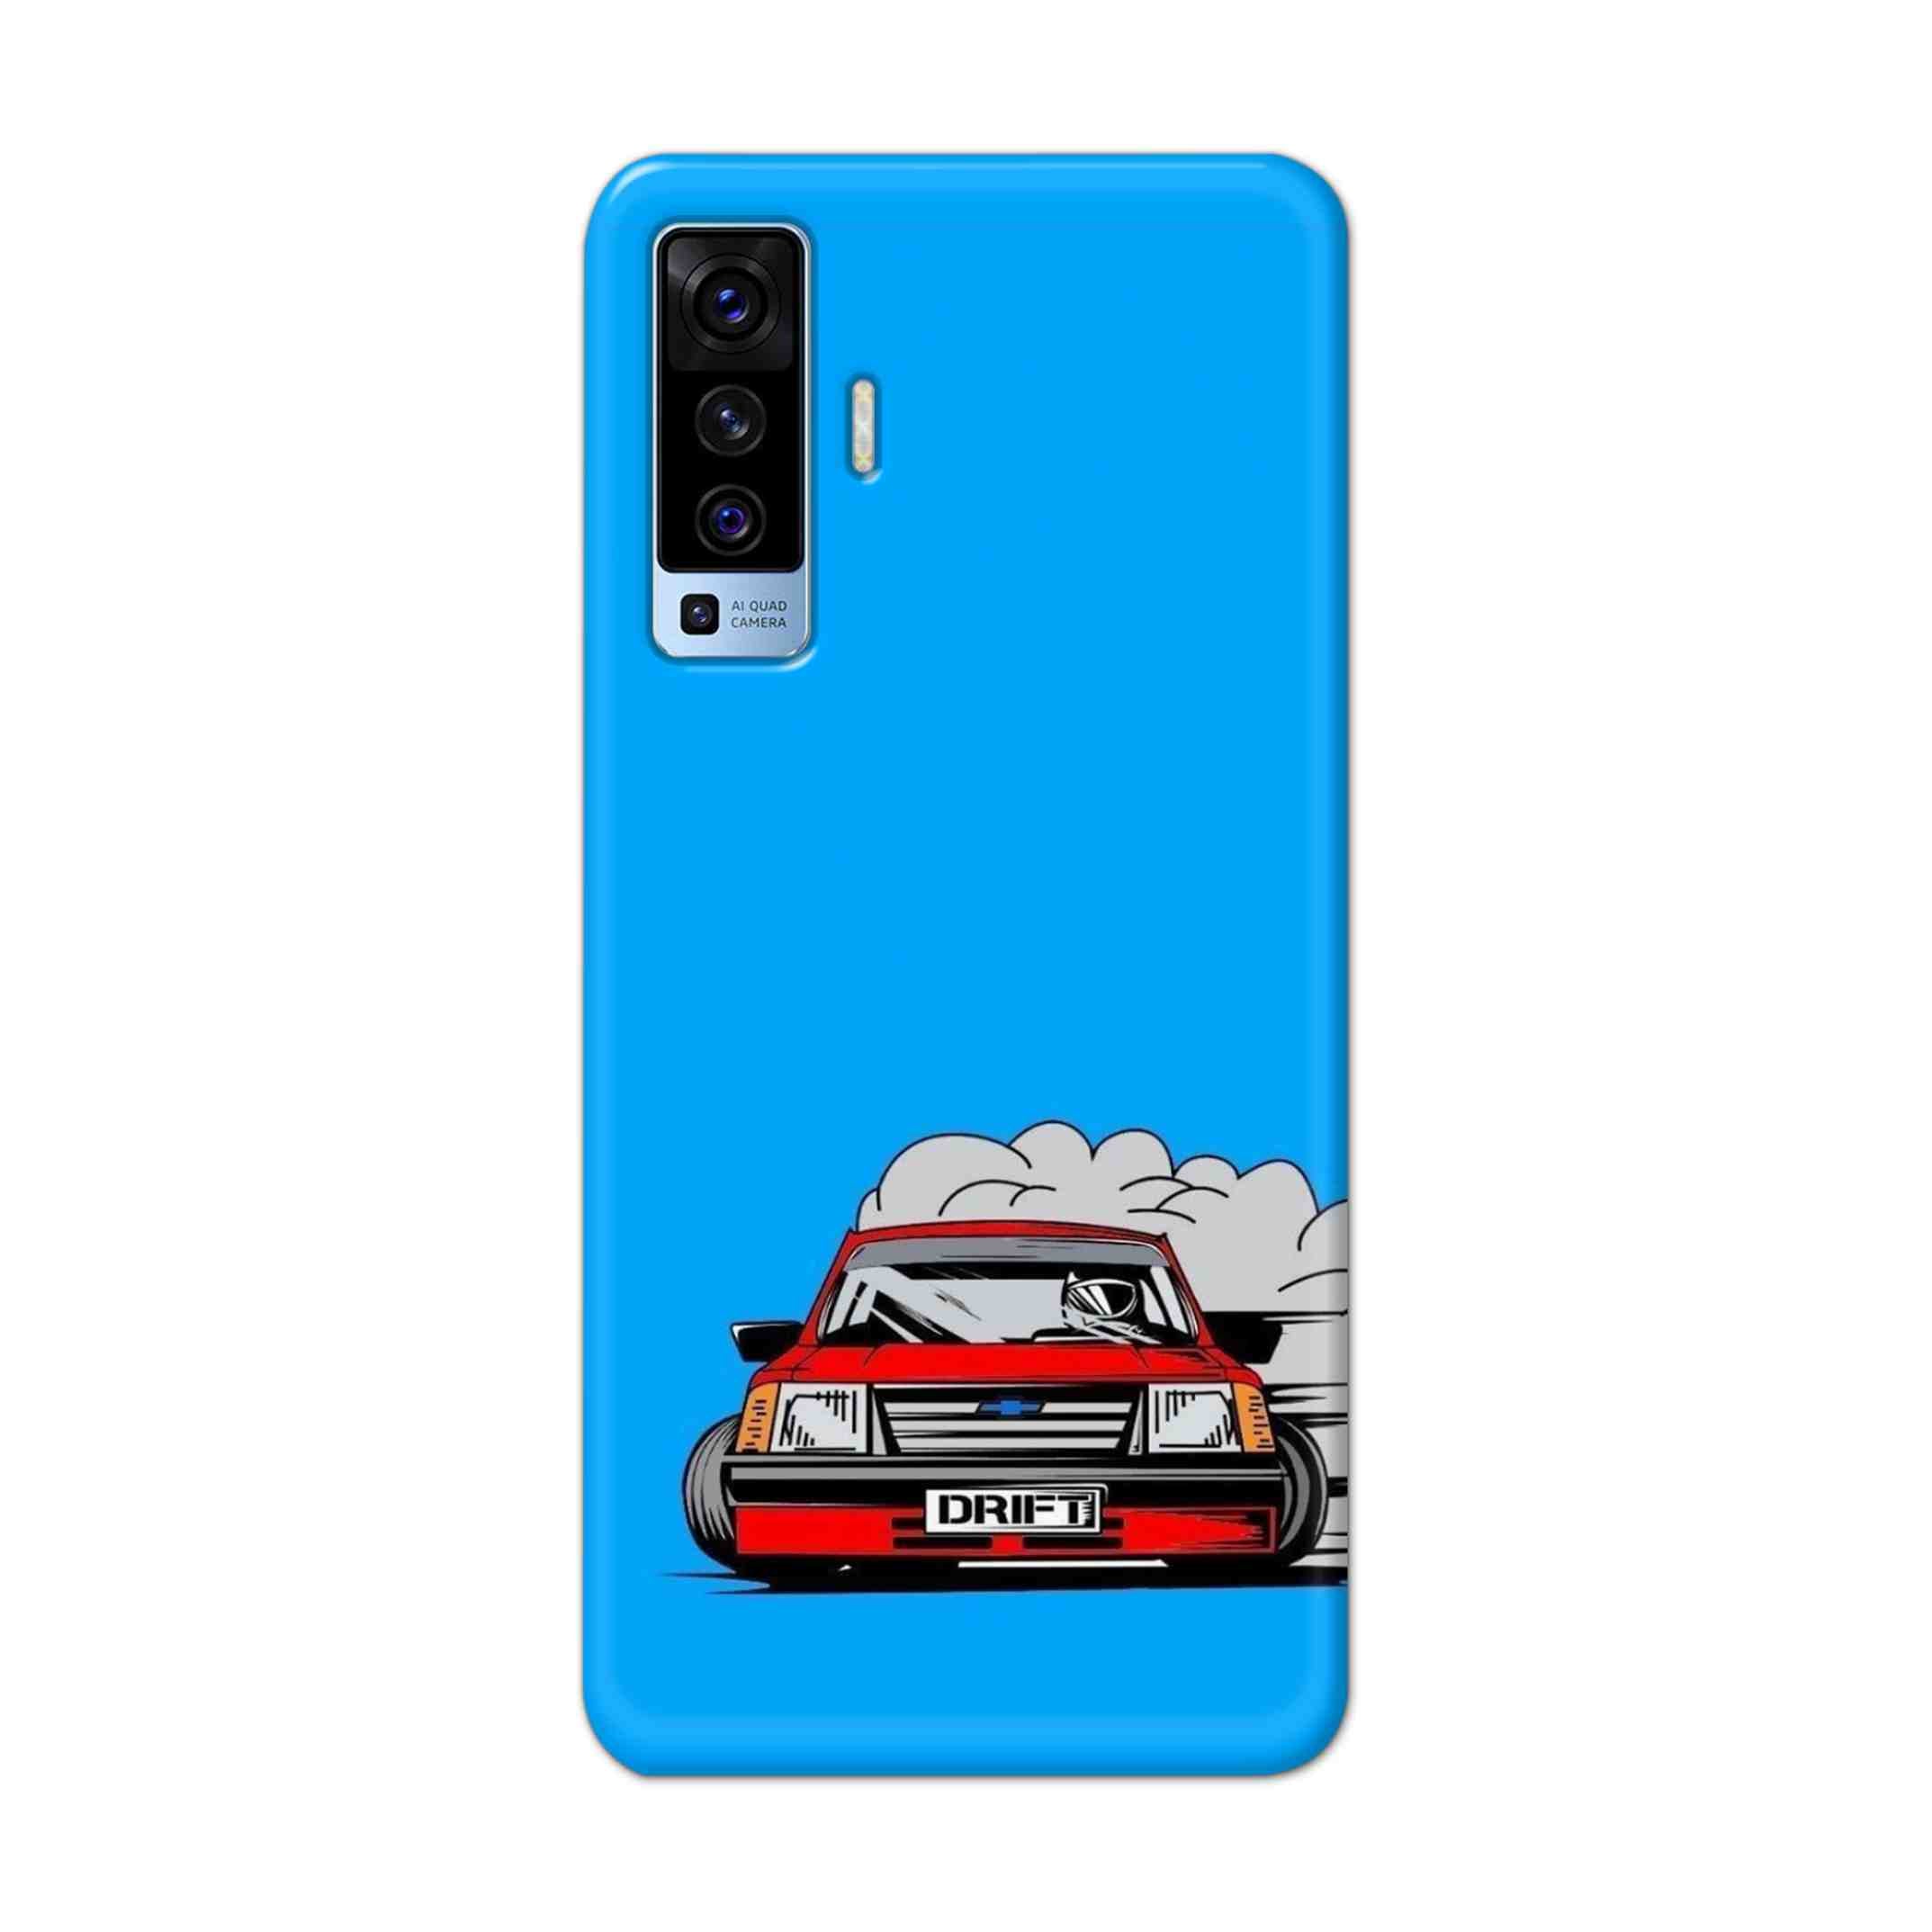 Buy Drift Hard Back Mobile Phone Case Cover For Vivo X50 Online